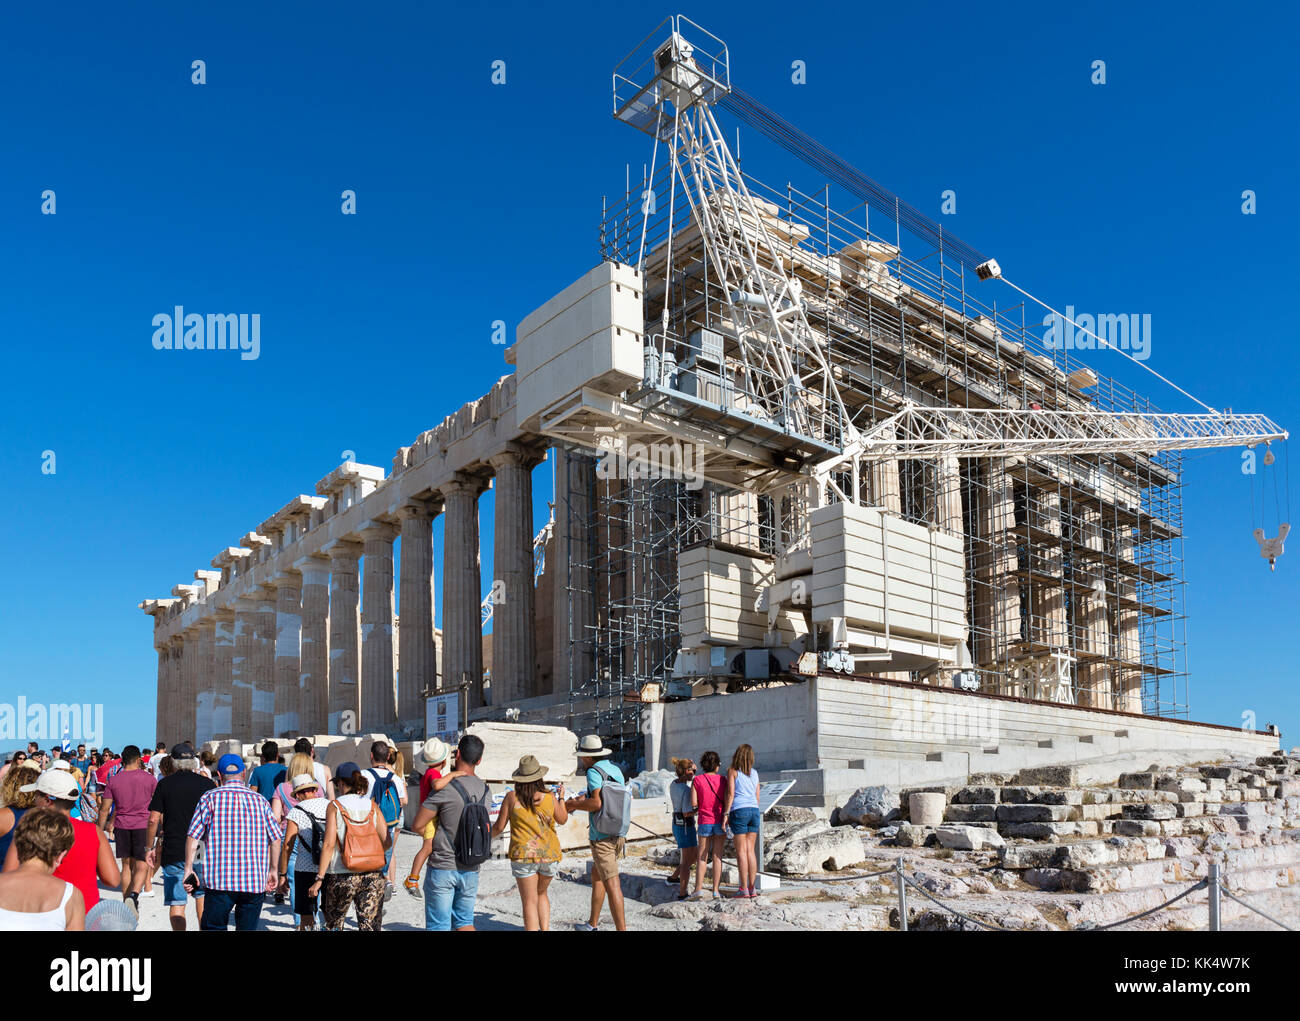 La fachada occidental del Partenón, que está experimentando la restauración a largo plazo / trabajos de conservación, la Acrópolis, Atenas, Grecia Foto de stock